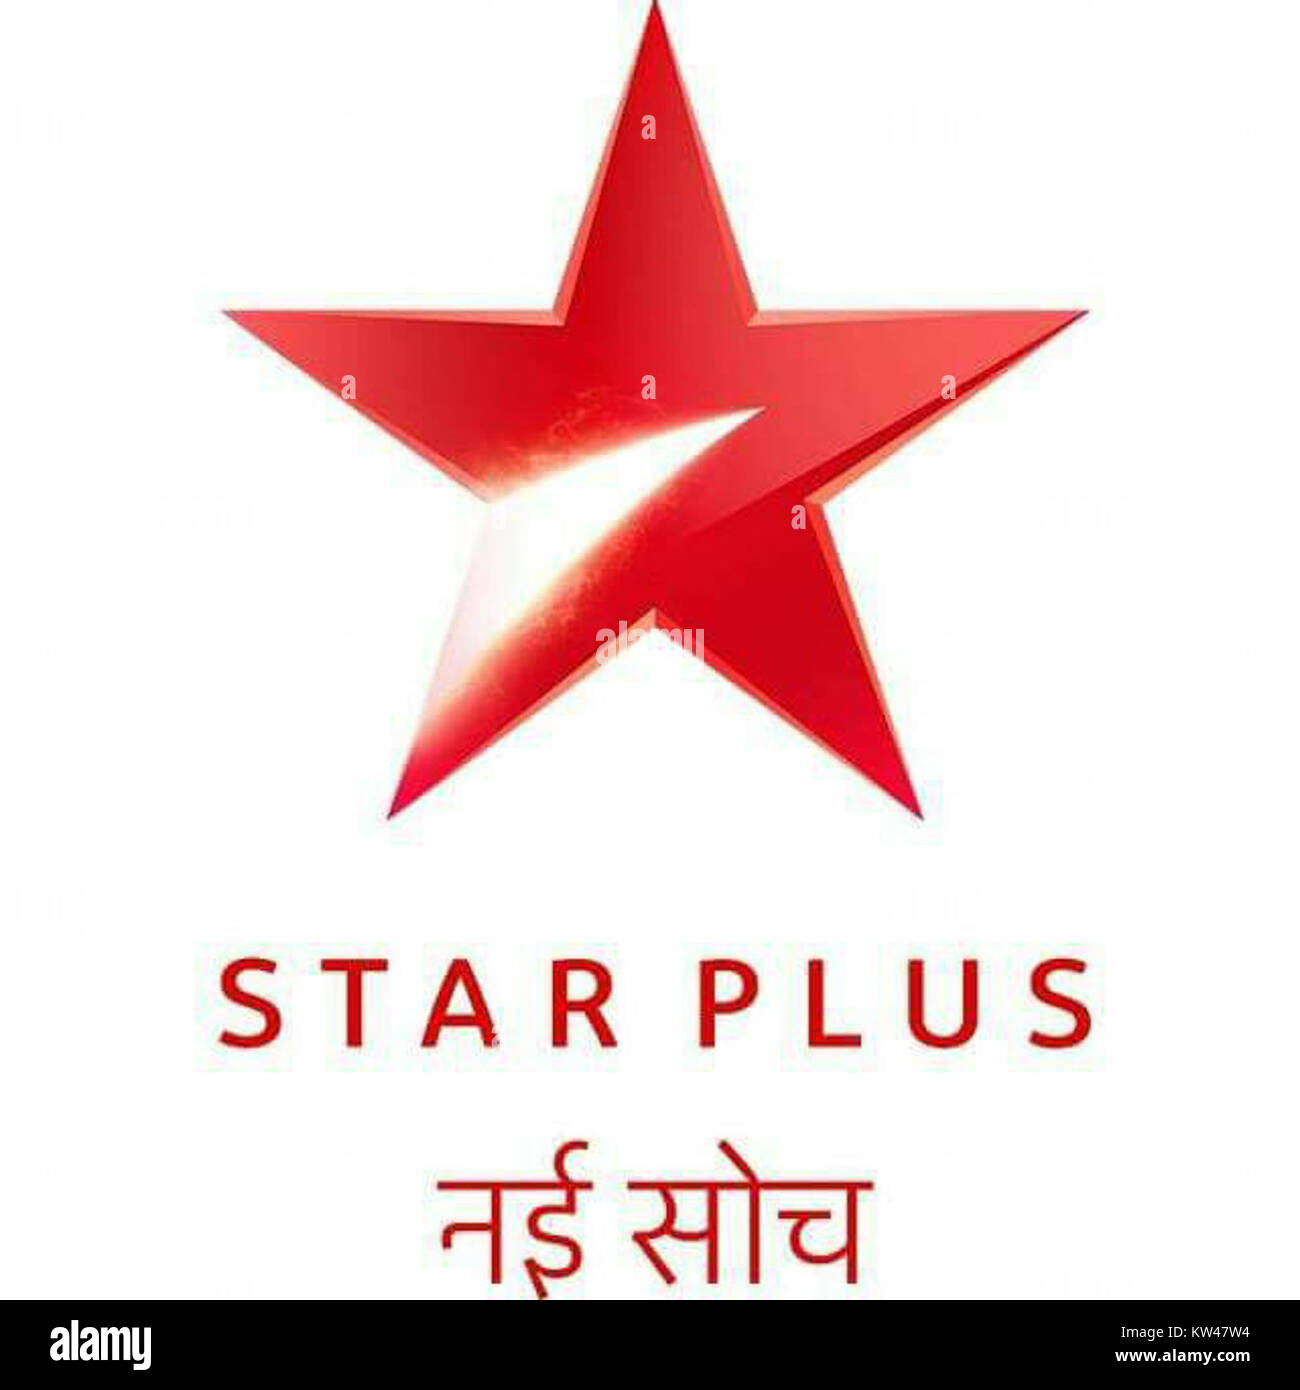 Star plus logo HD wallpapers | Pxfuel-vietvuevent.vn